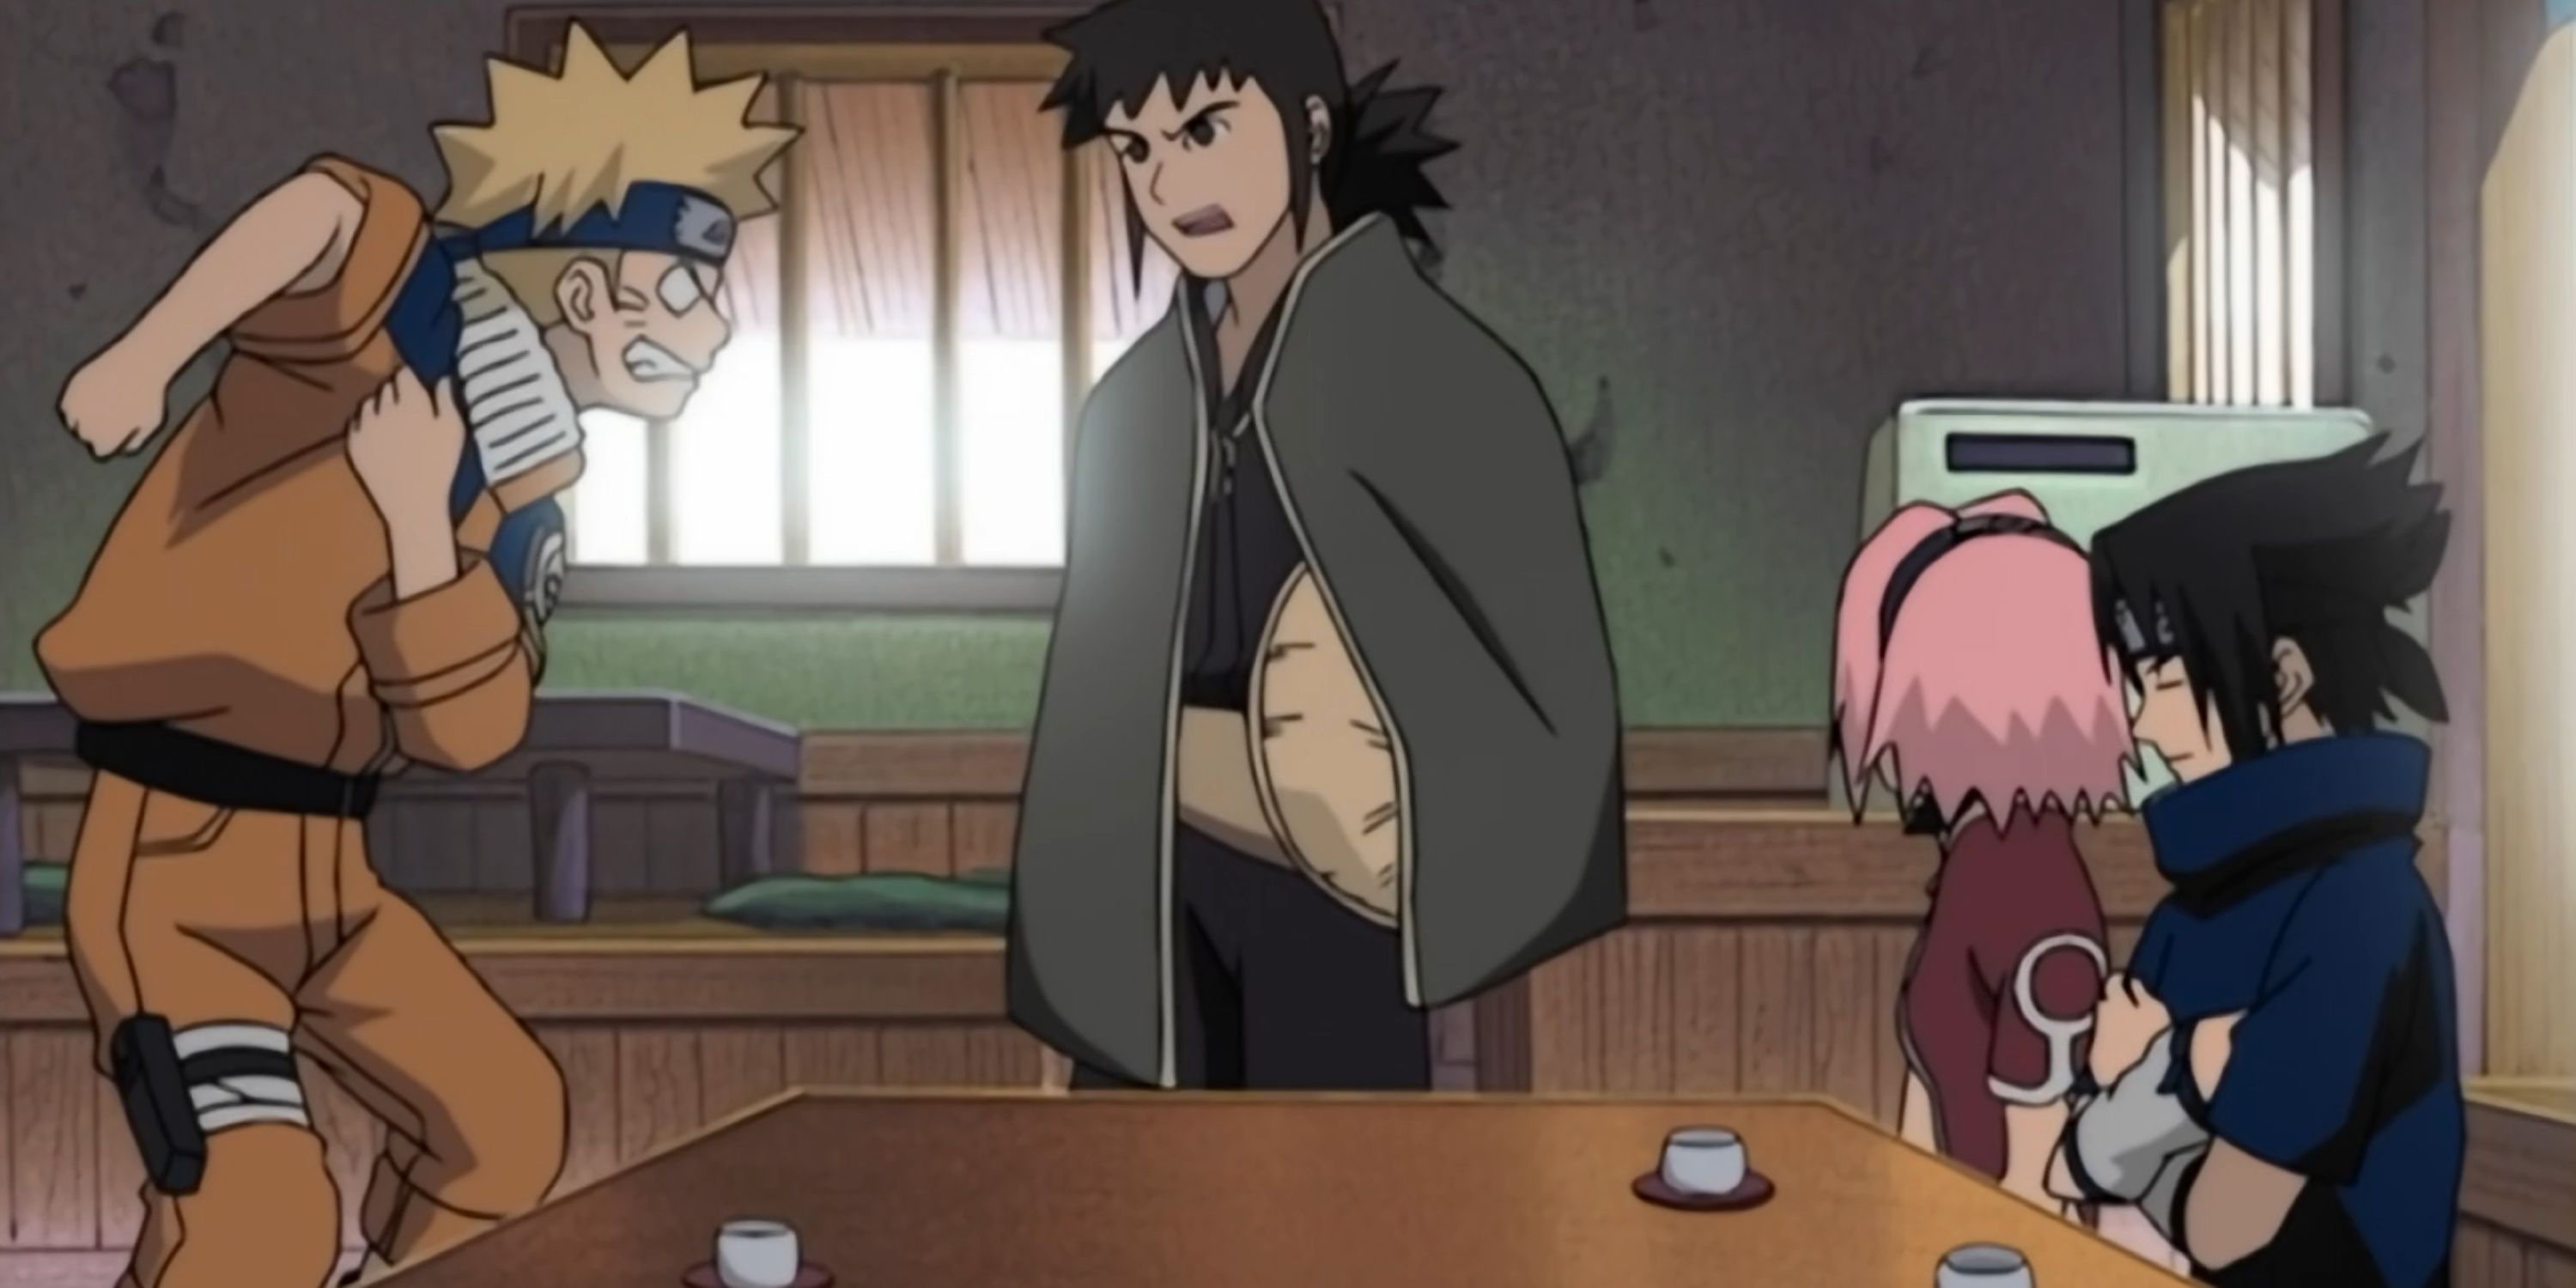 Naruto, Idate, Sakura, and Sasuke  during episode 102 of the Land of Tea Arc